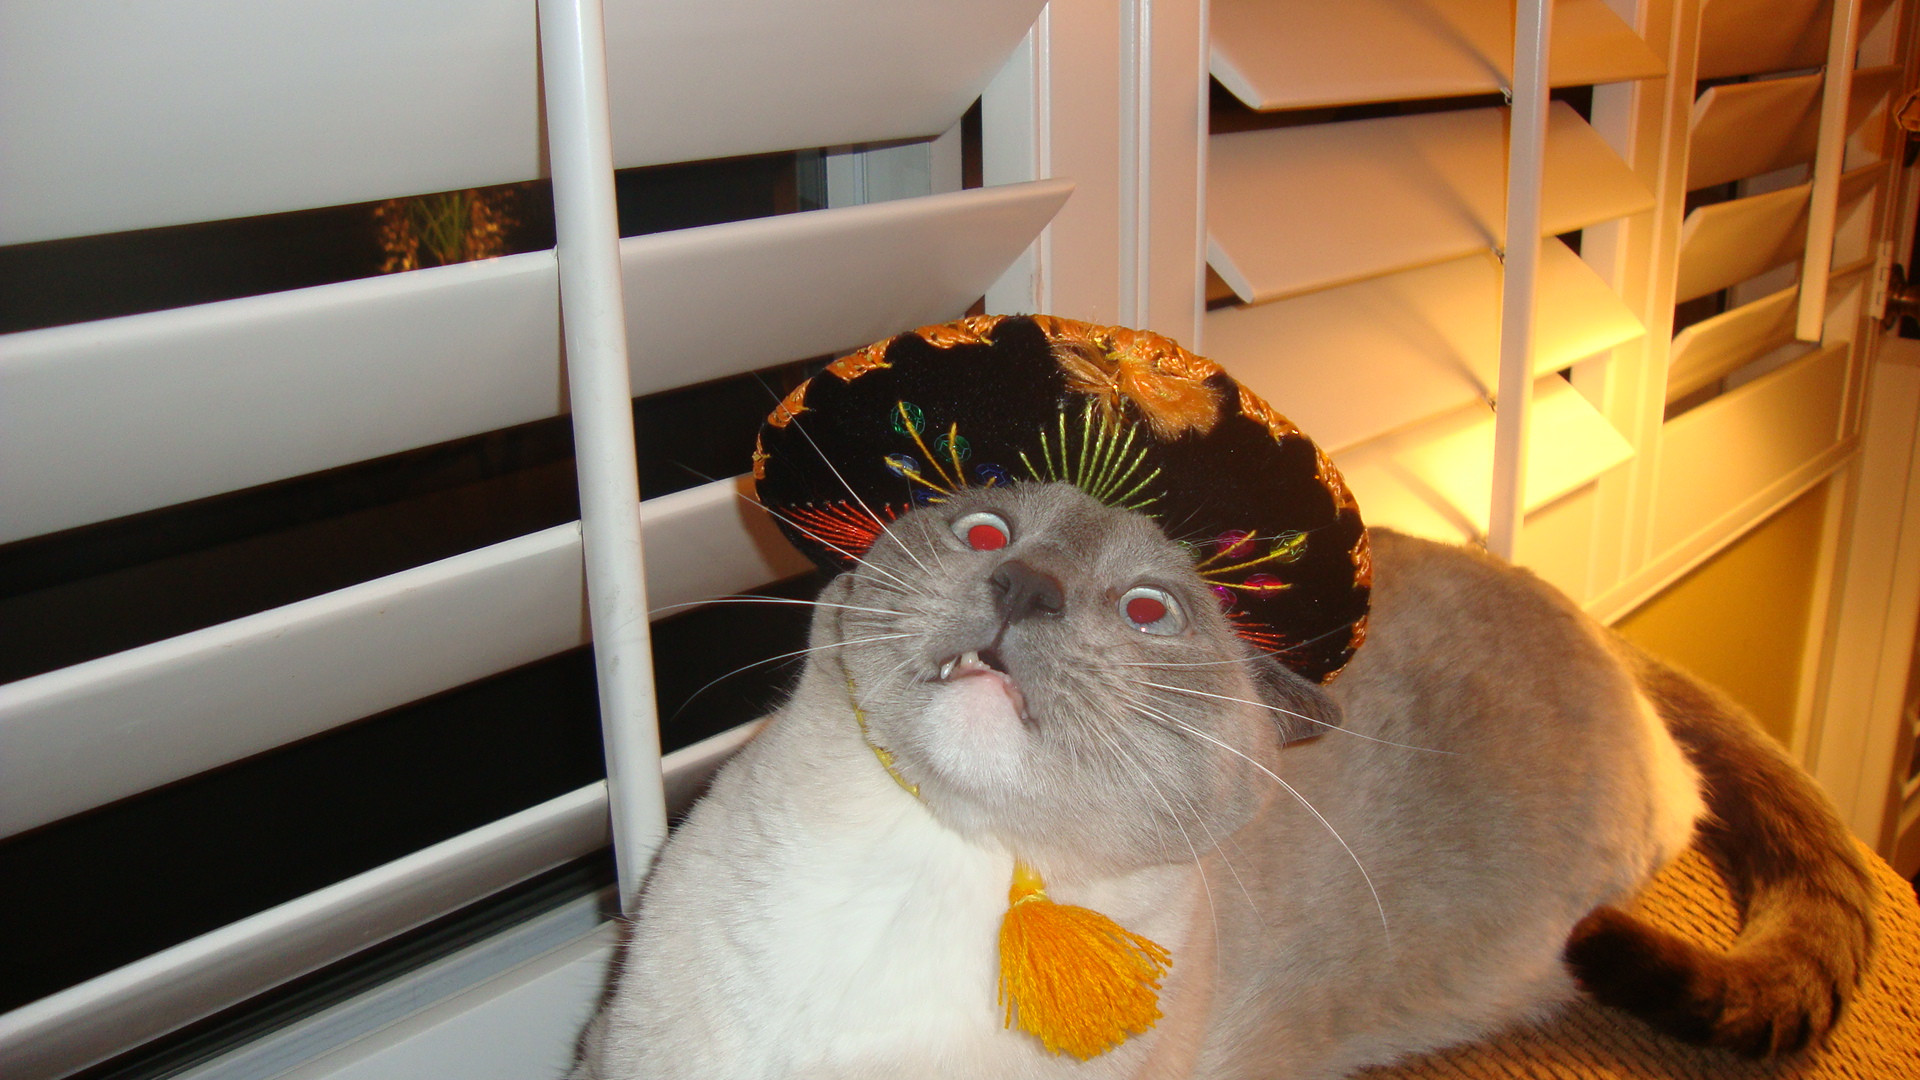 Cats Wearing Sombreros